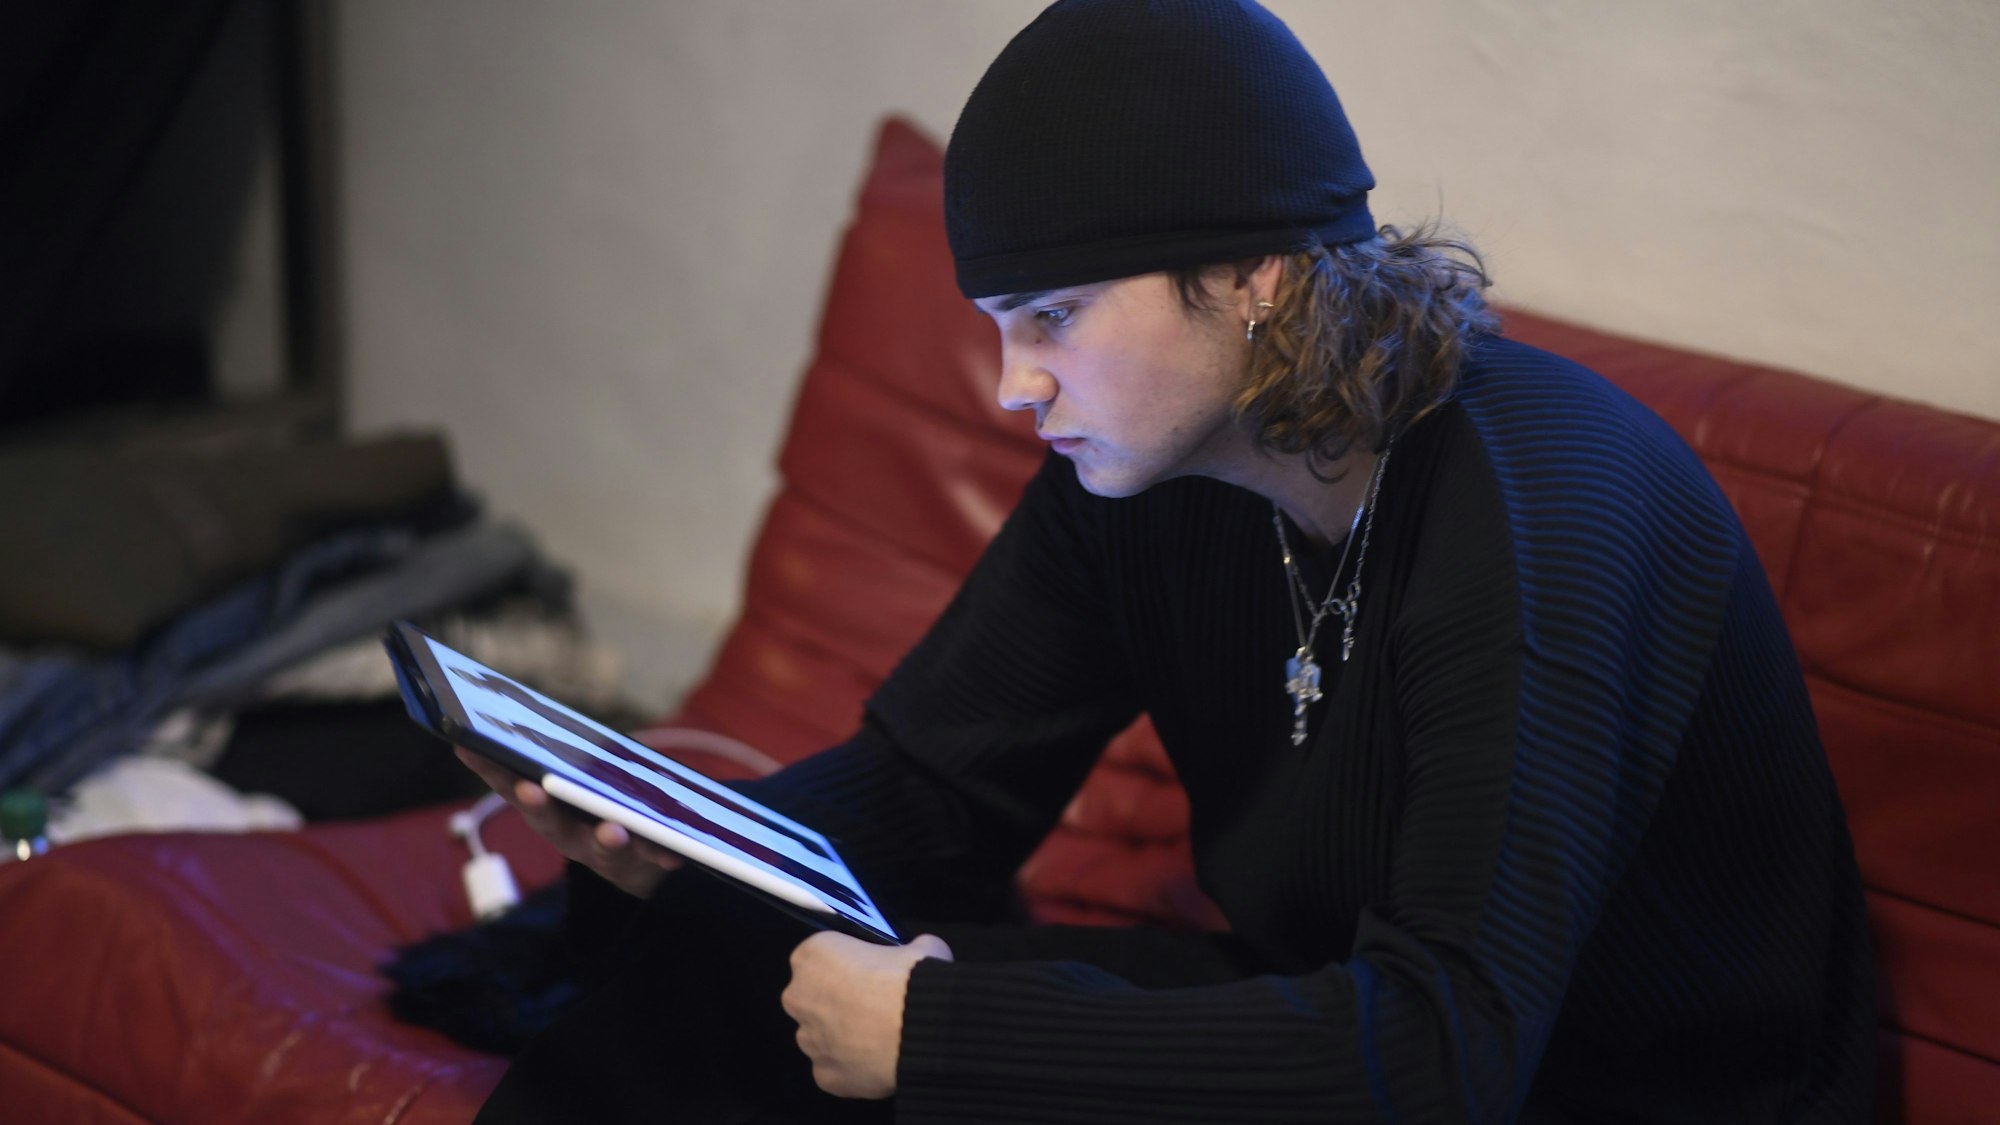 Luis Dobbelgarten sitzt mit iPad auf einem roten Sofa.